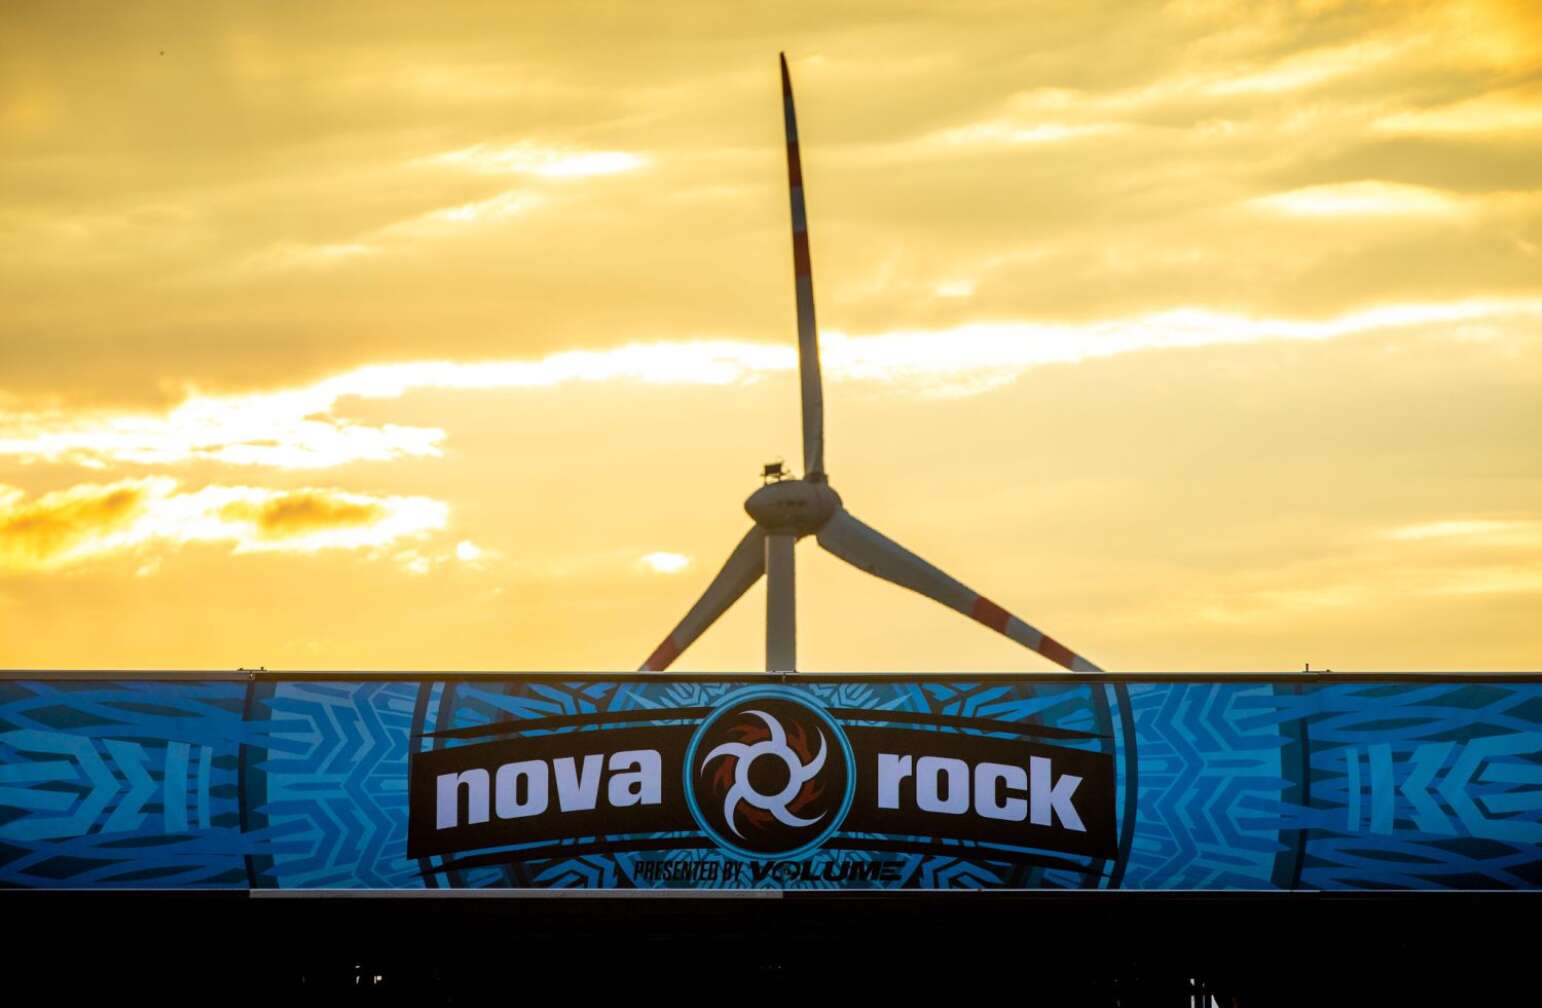 Nova Rock-Banner und Windrad im Hintergrund